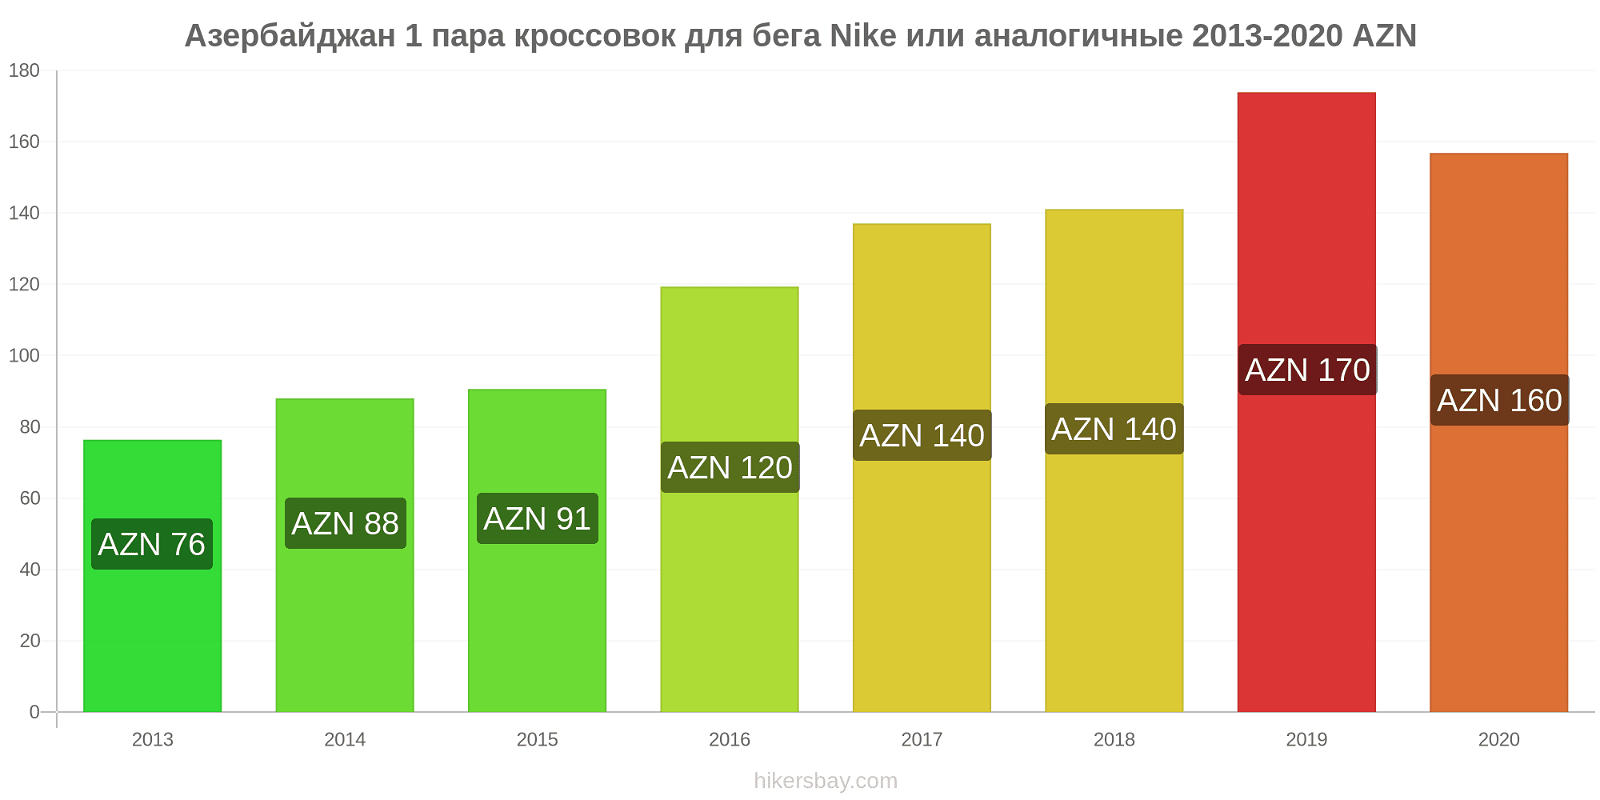 Азербайджан изменения цен 1 пара кроссовок для бега Nike или аналогичные hikersbay.com